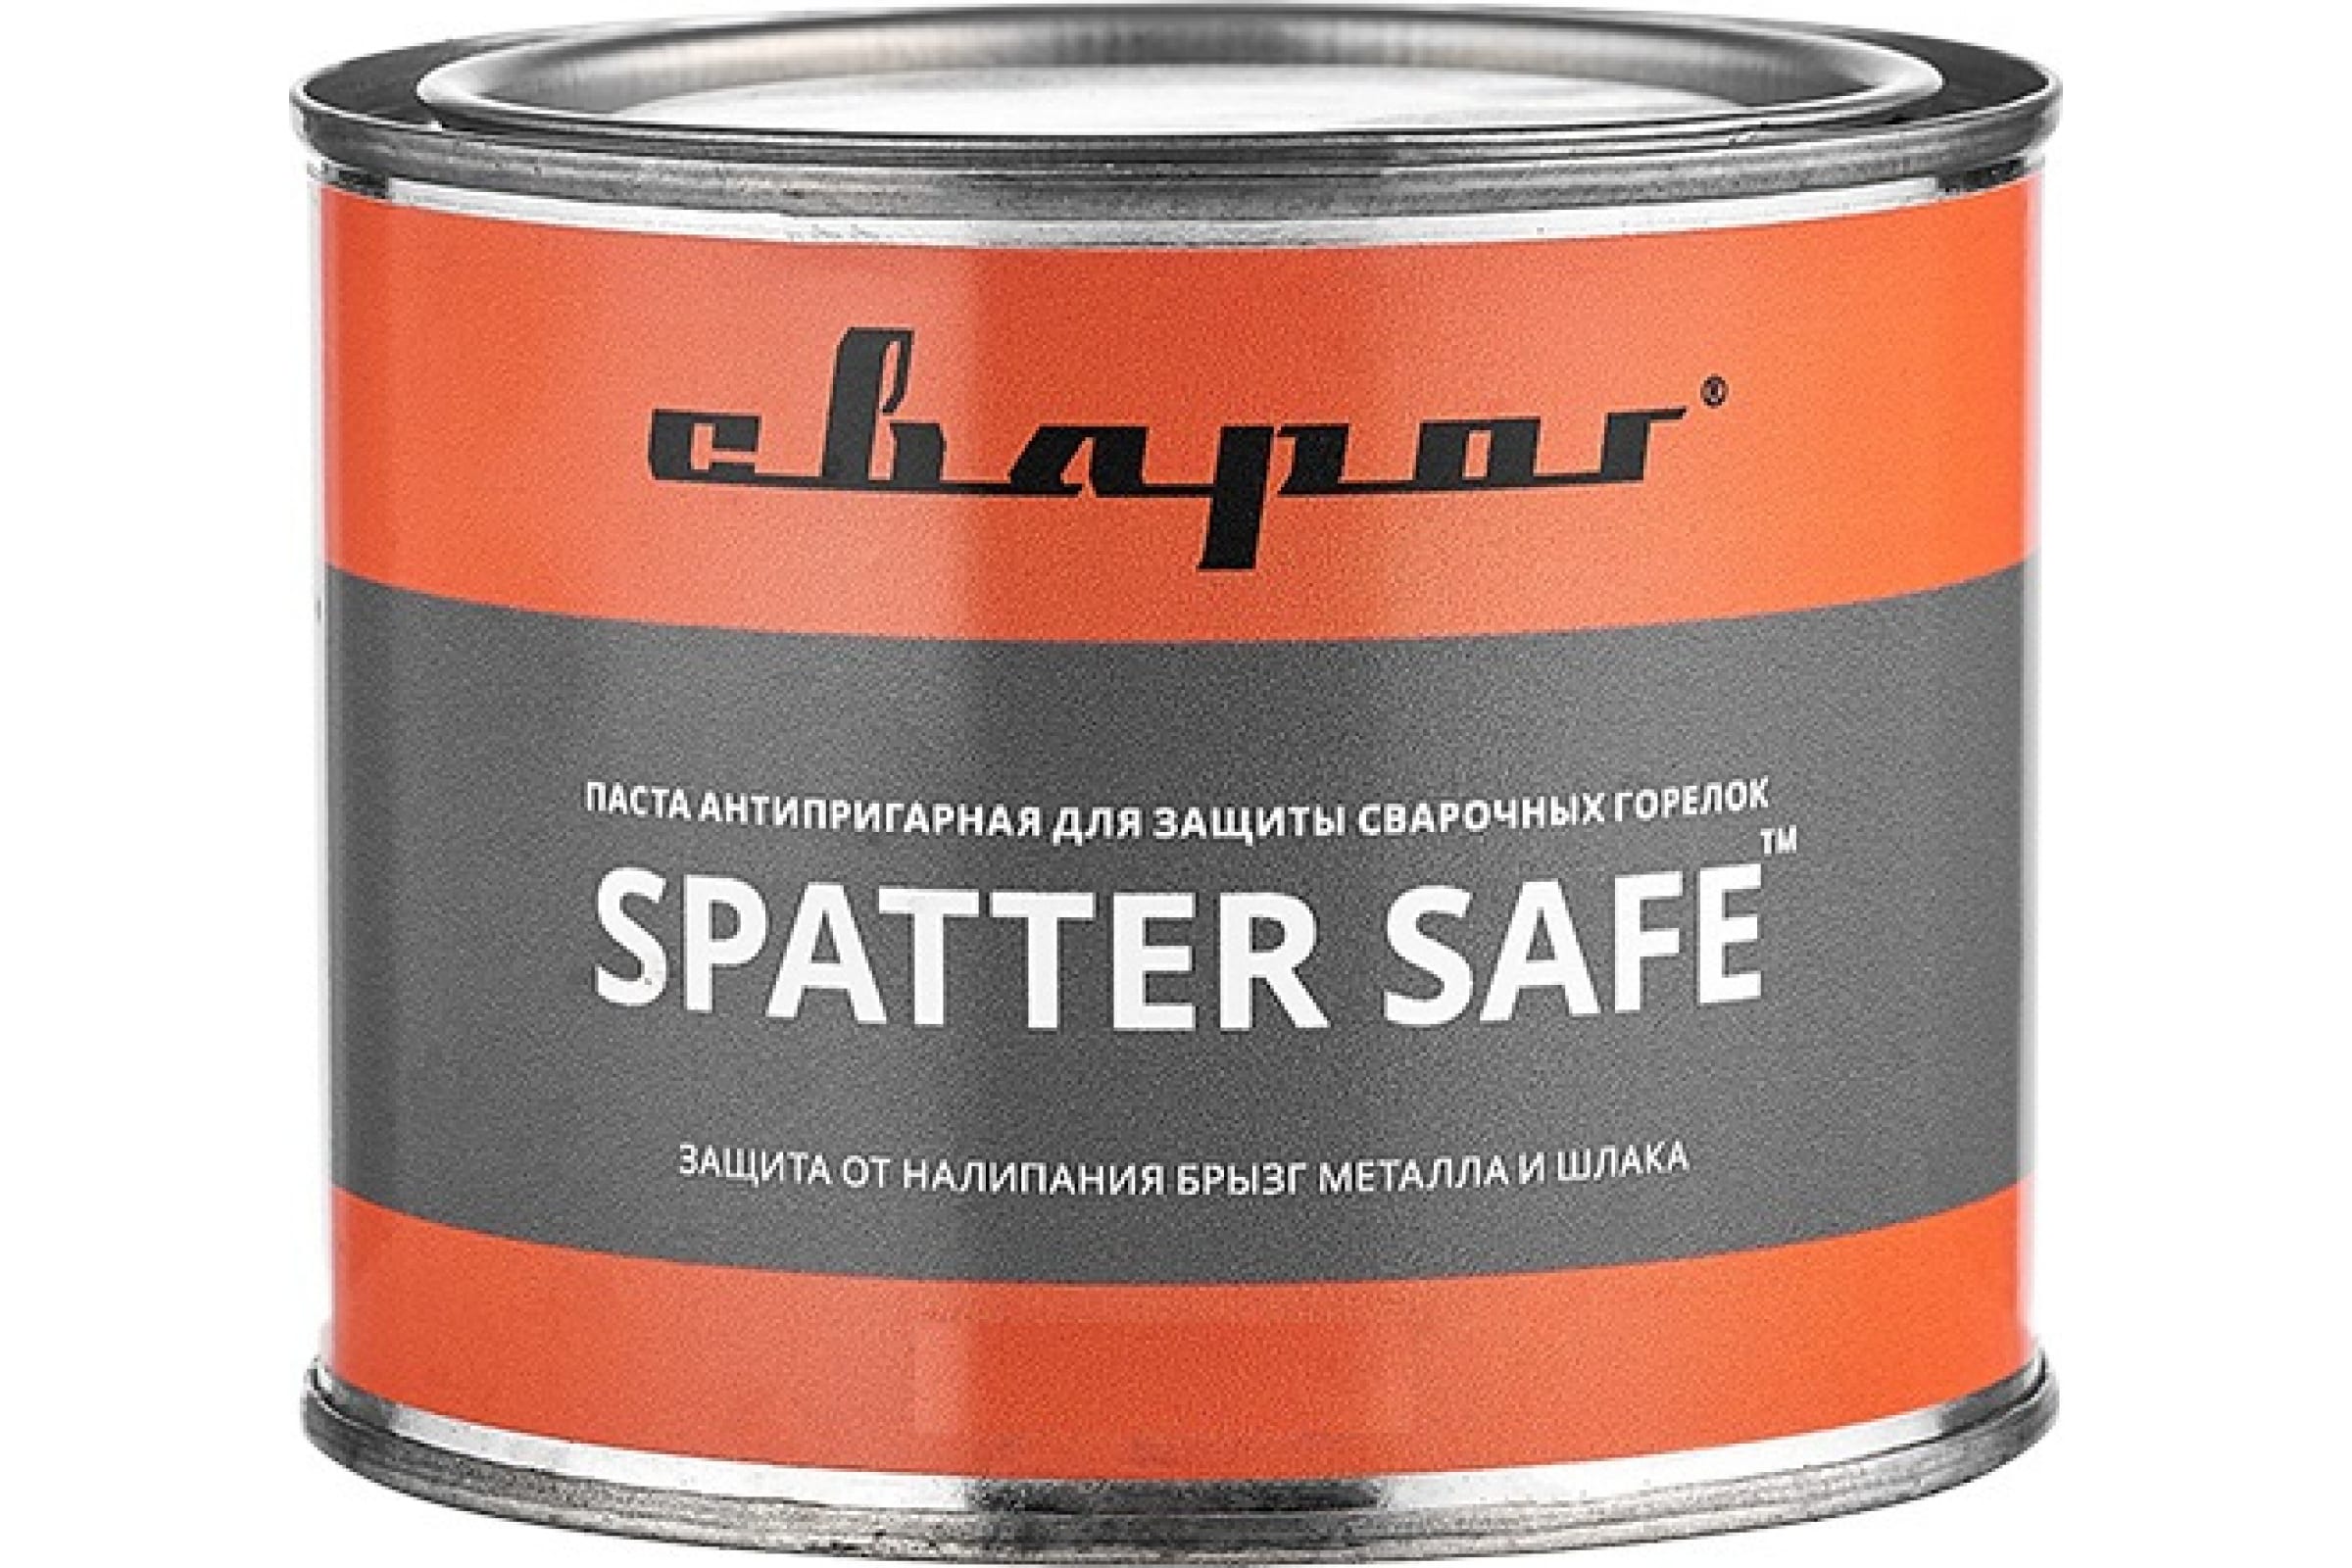 фото Сварог паста антипригарная для защиты сварочных горелок spatter safe, 300 гр. тм 98941